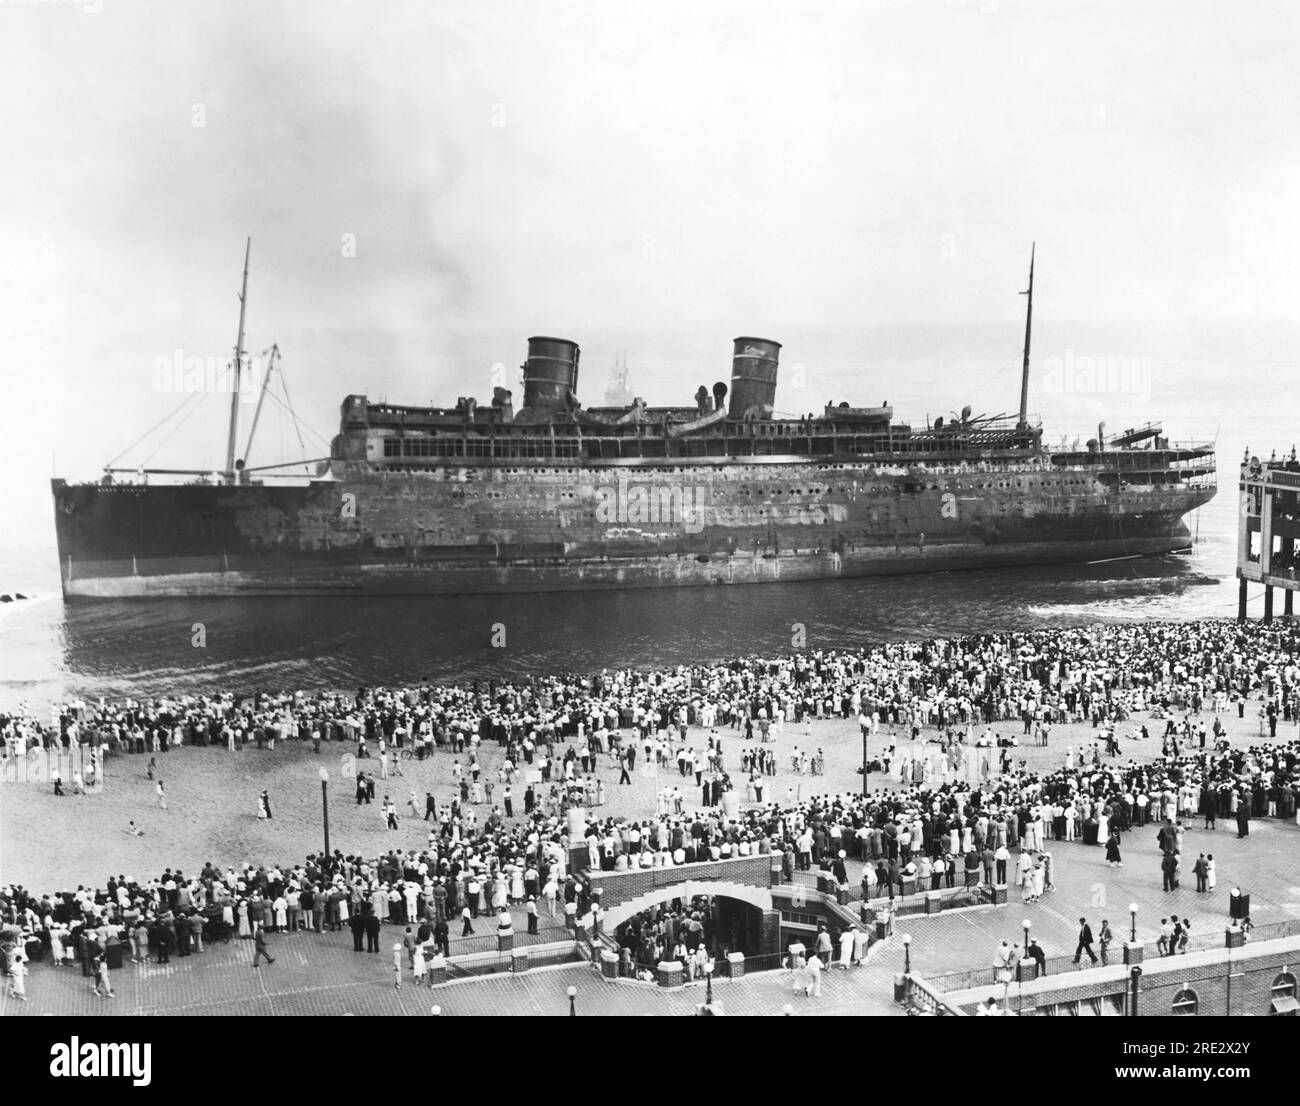 Asbury Park, New Jersey: 9. September 1934 Zuschauer versammeln sich am Strand von Asbury Park, um das ausgebrannte Passagierschiff SS Morro Castle zu sehen. 137 Passagiere und Besatzungsmitglieder starben bei der Katastrophe. Stockfoto